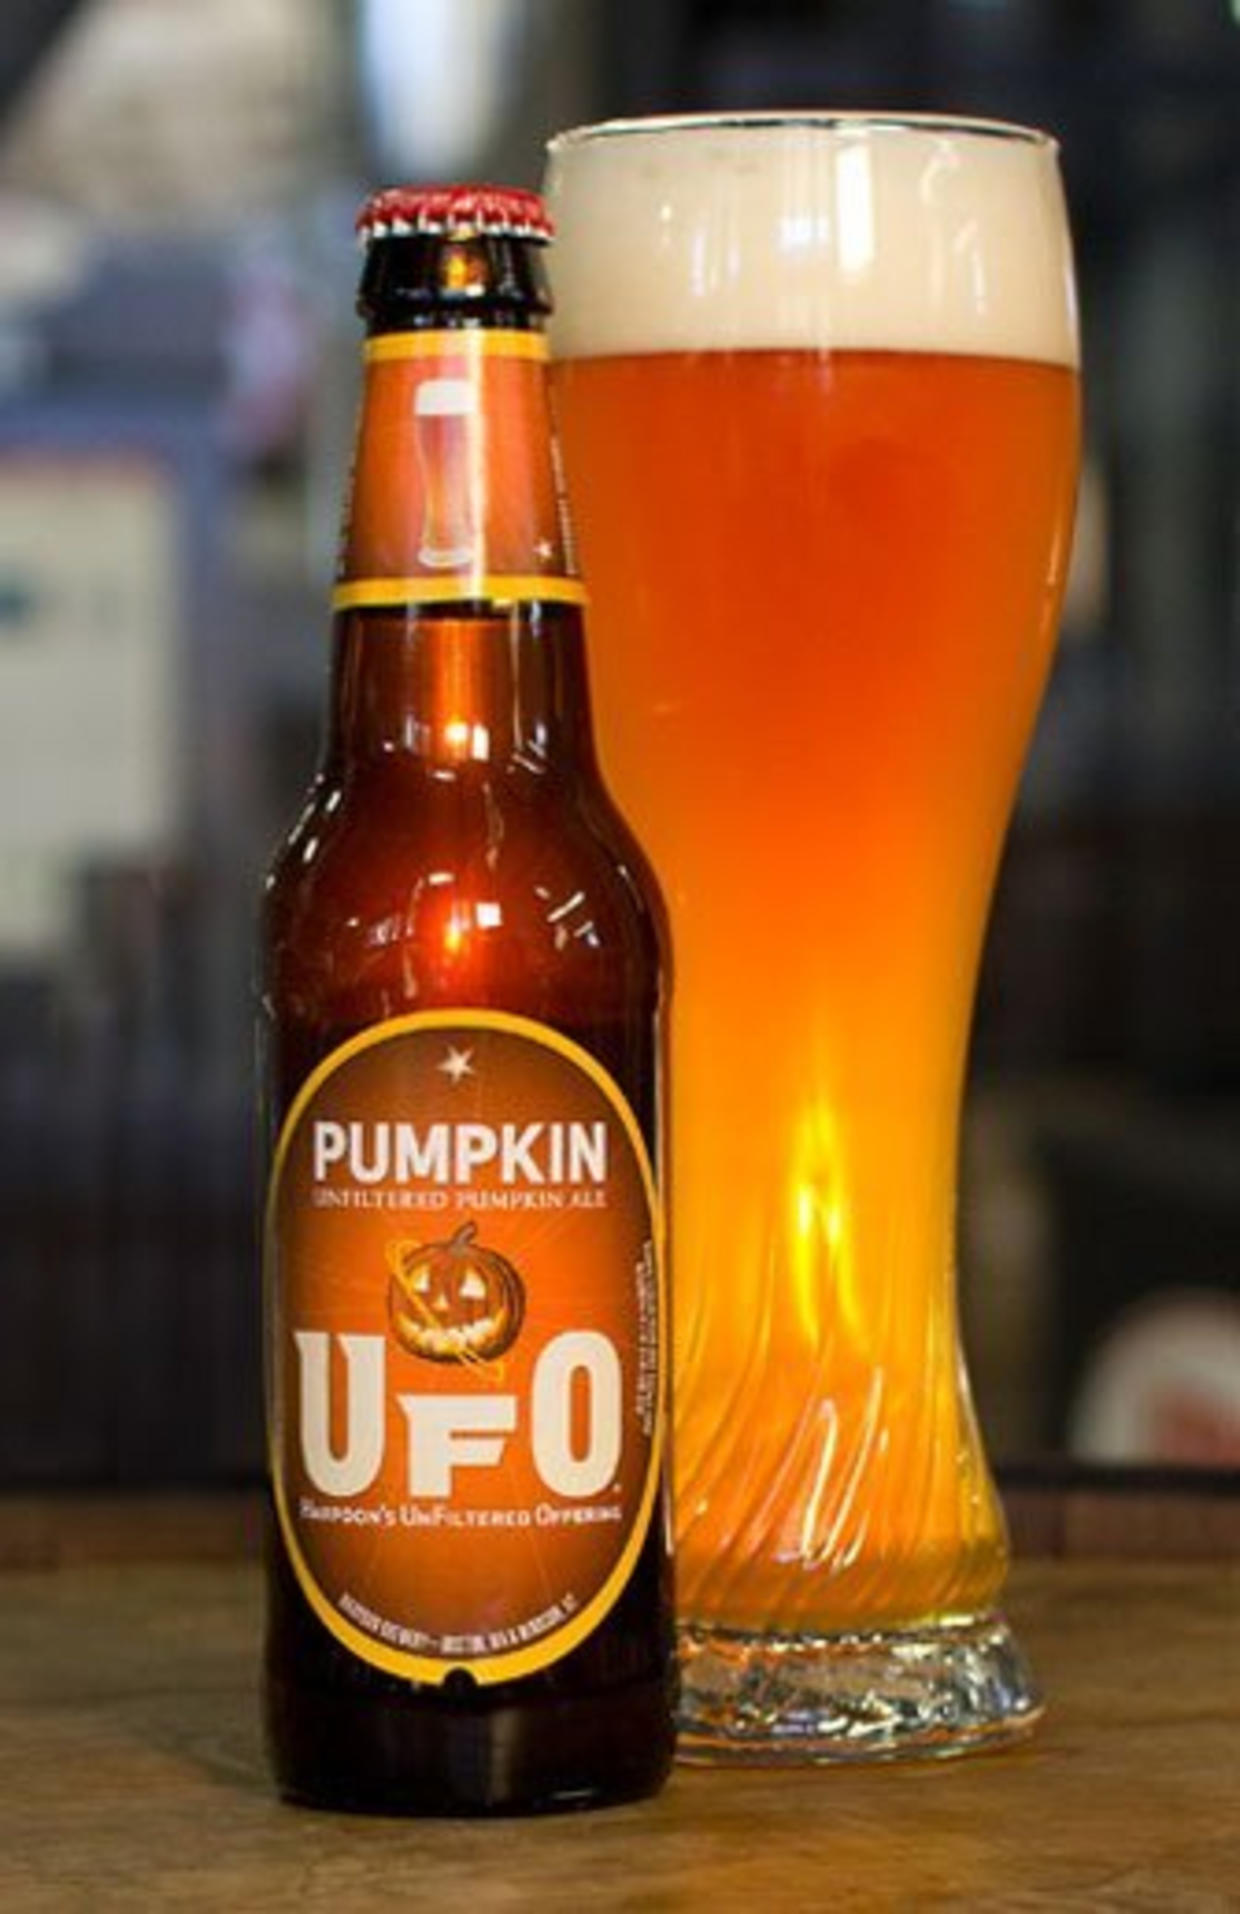 harpoon ufo pumpkin abv